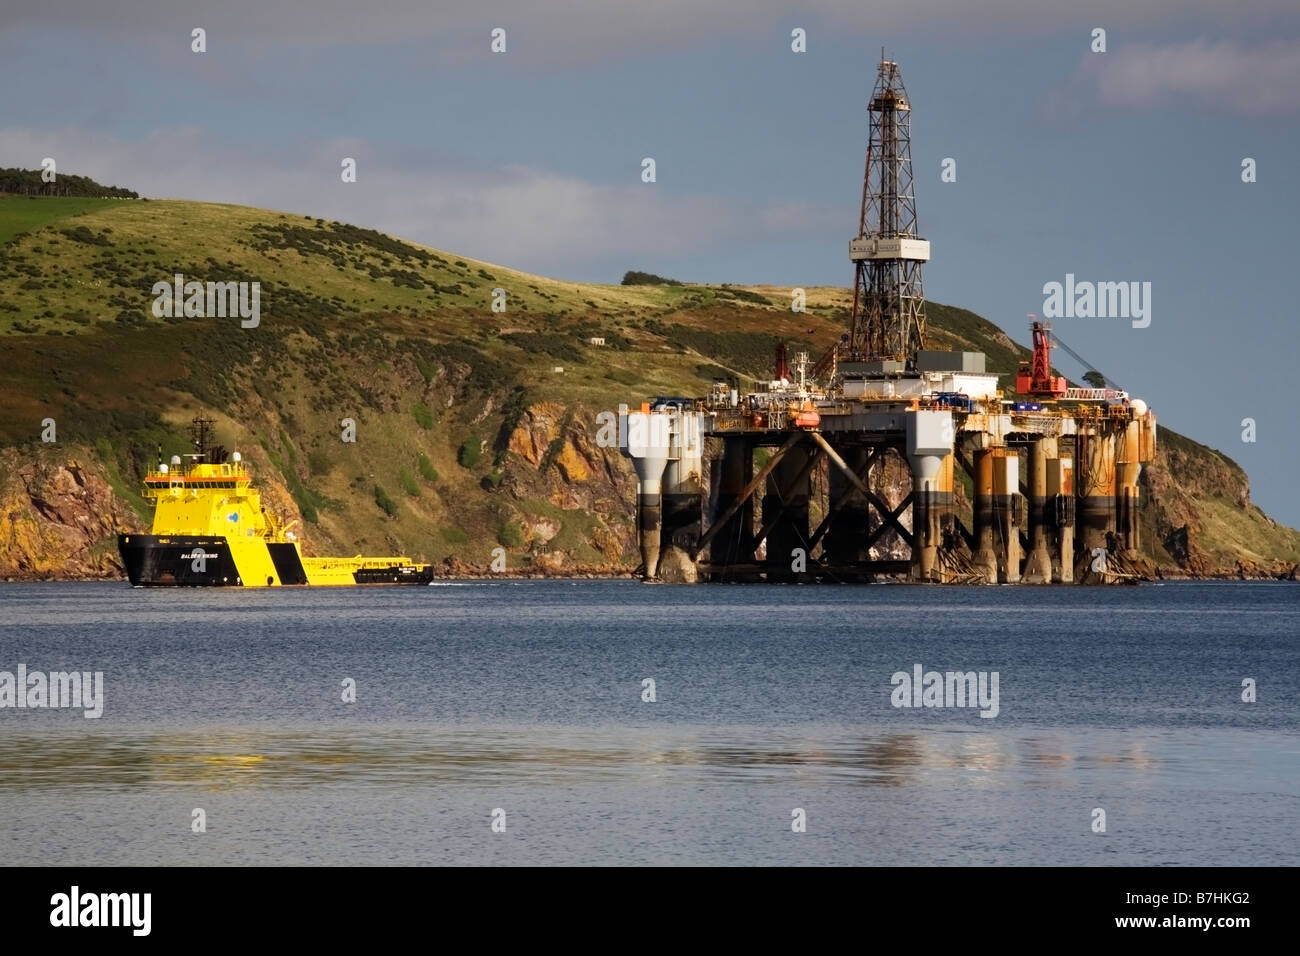 Ölplattform Ozean Nomad geschleppt durch den Cromarty Firth auf dem Weg nach Invergordon Schottland Stockfoto